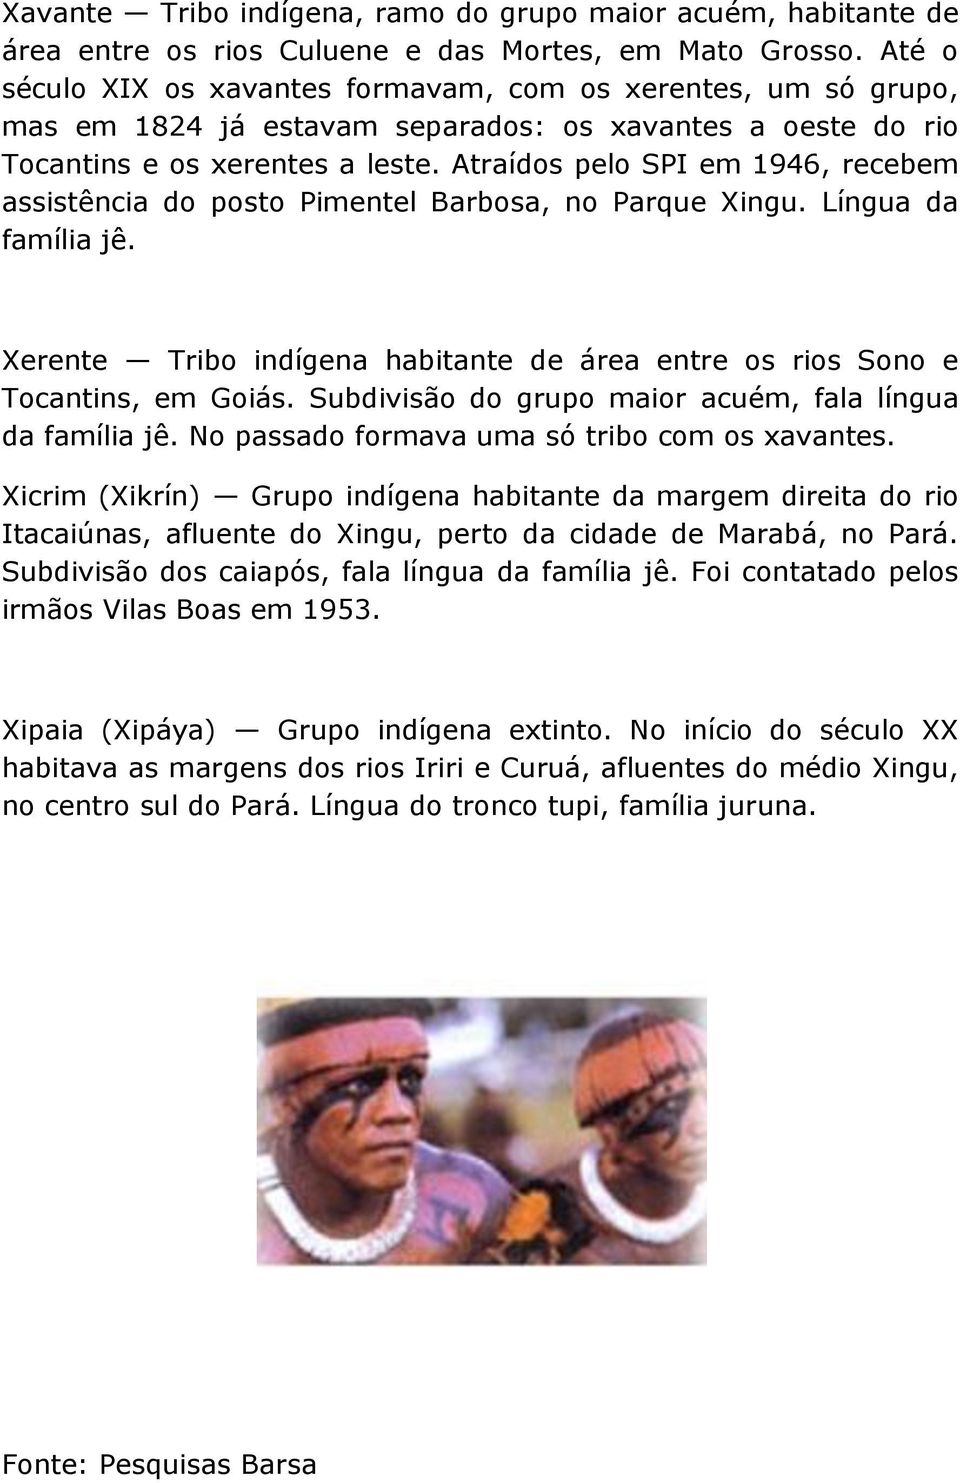 Atraídos pelo SPI em 1946, recebem assistência do posto Pimentel Barbosa, no Parque Xingu. Língua da família jê. Xerente Tribo indígena habitante de área entre os rios Sono e Tocantins, em Goiás.